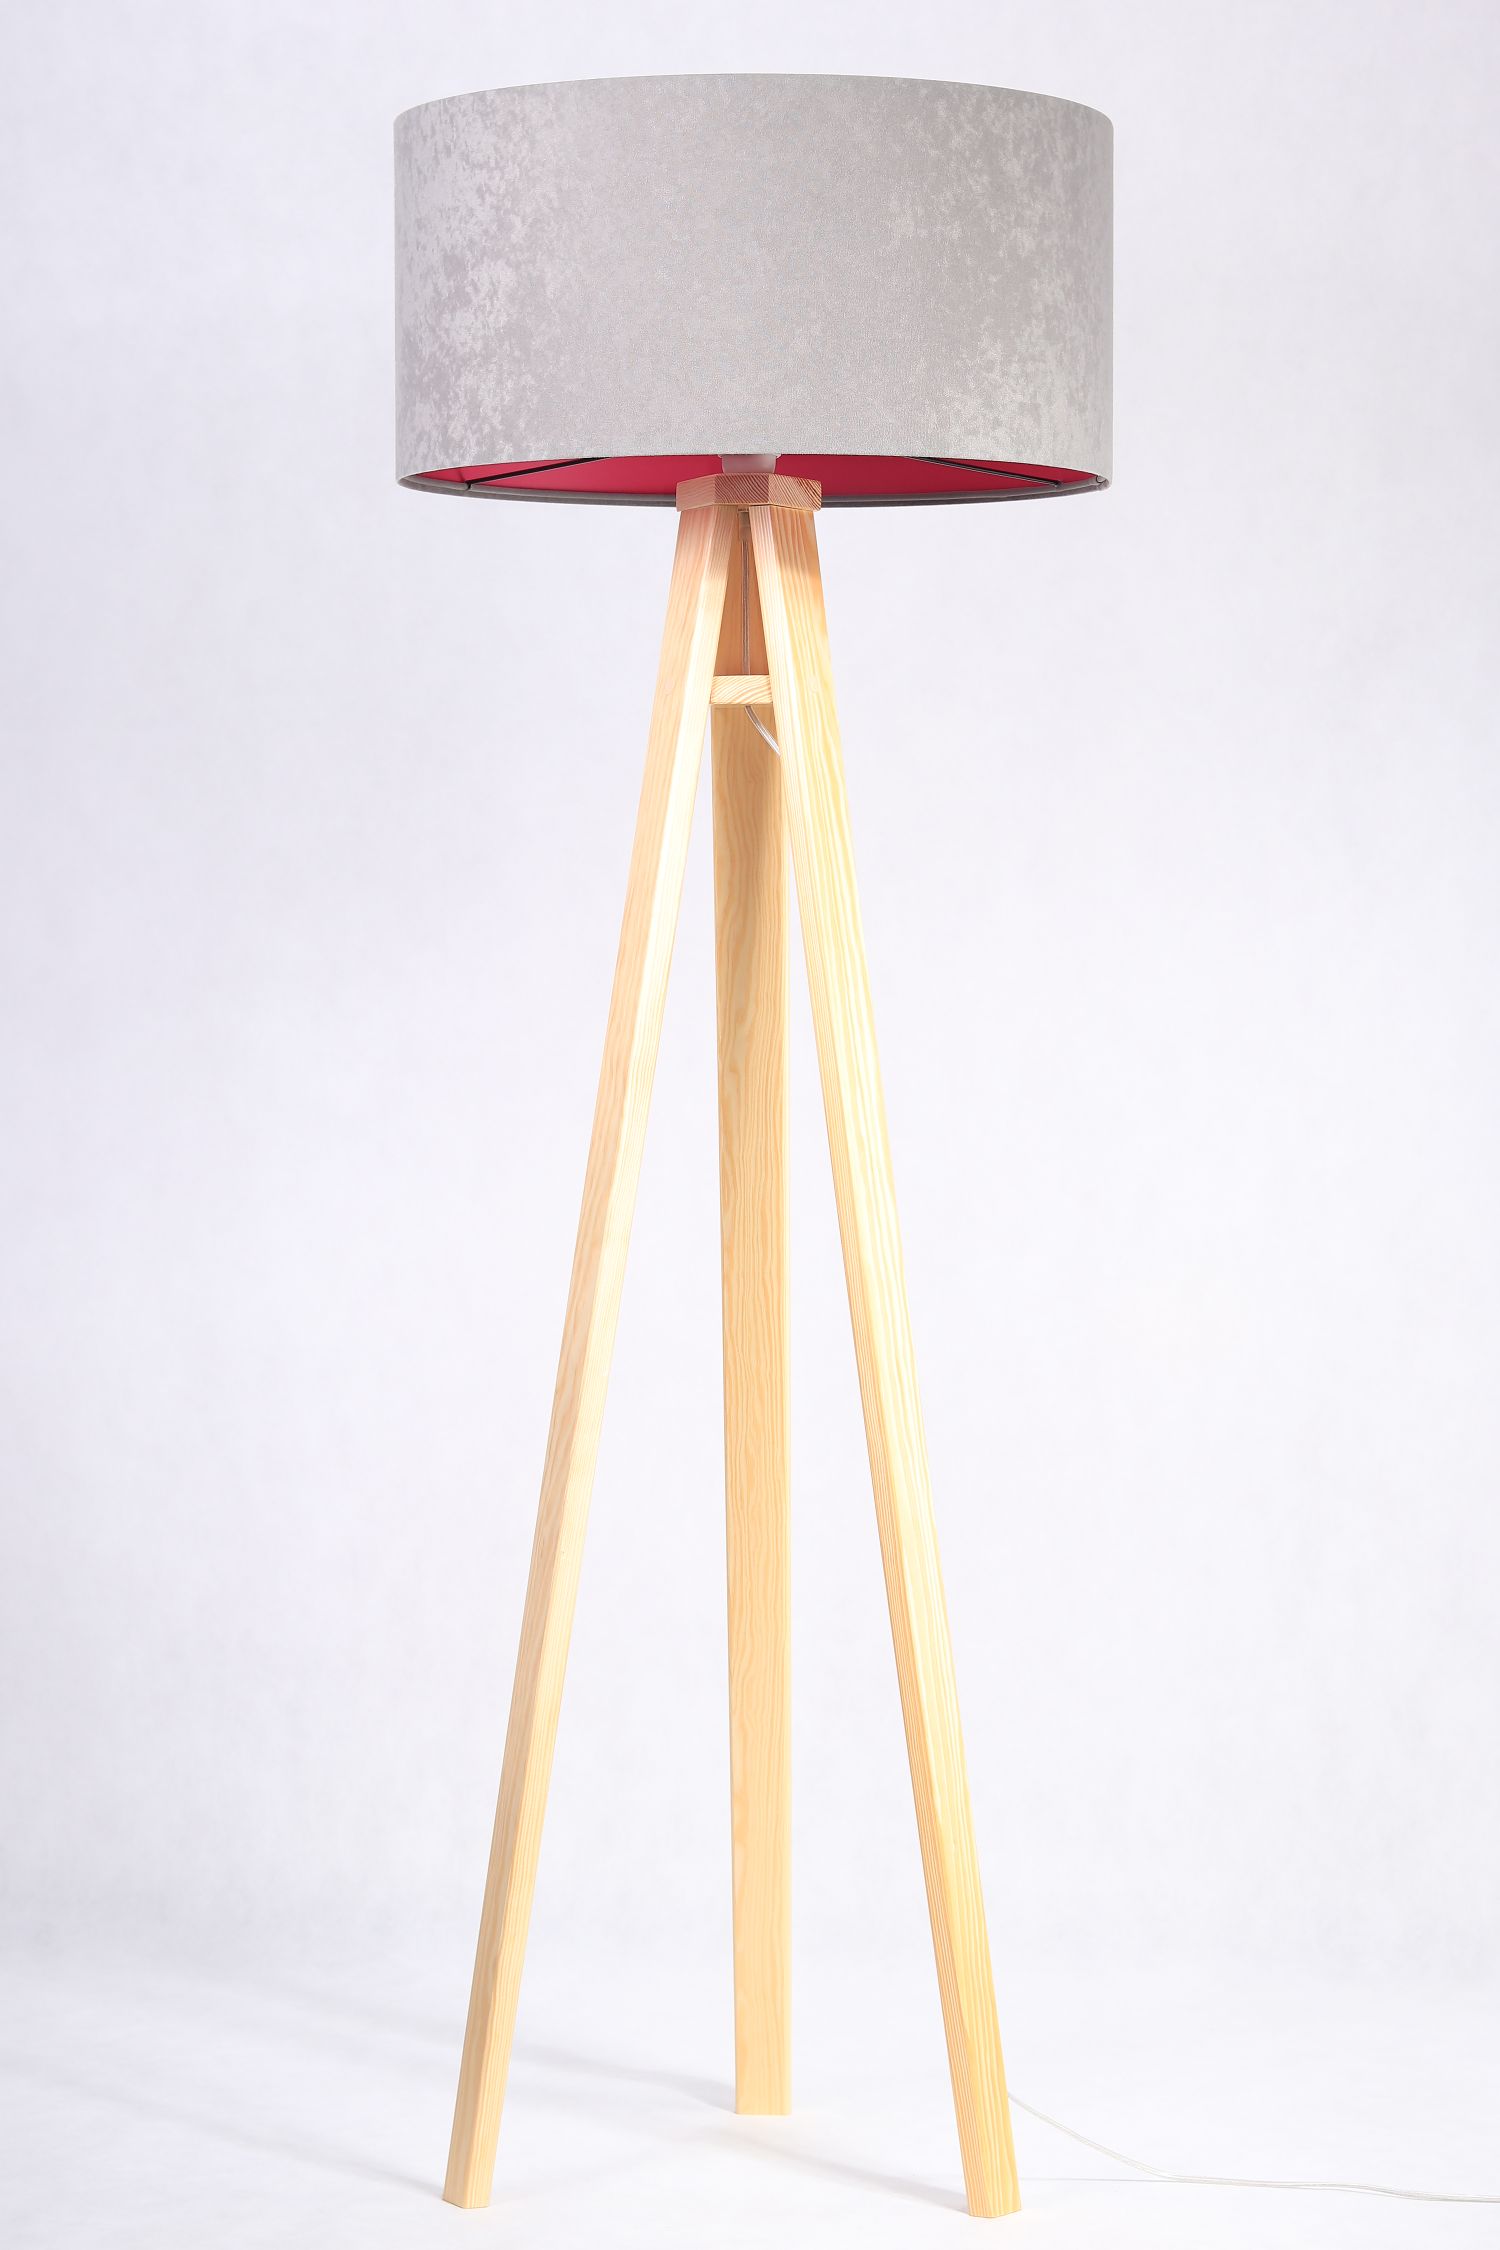 Stehlampe Dreibein Holzleuchte Grau Pink Retro 145cm